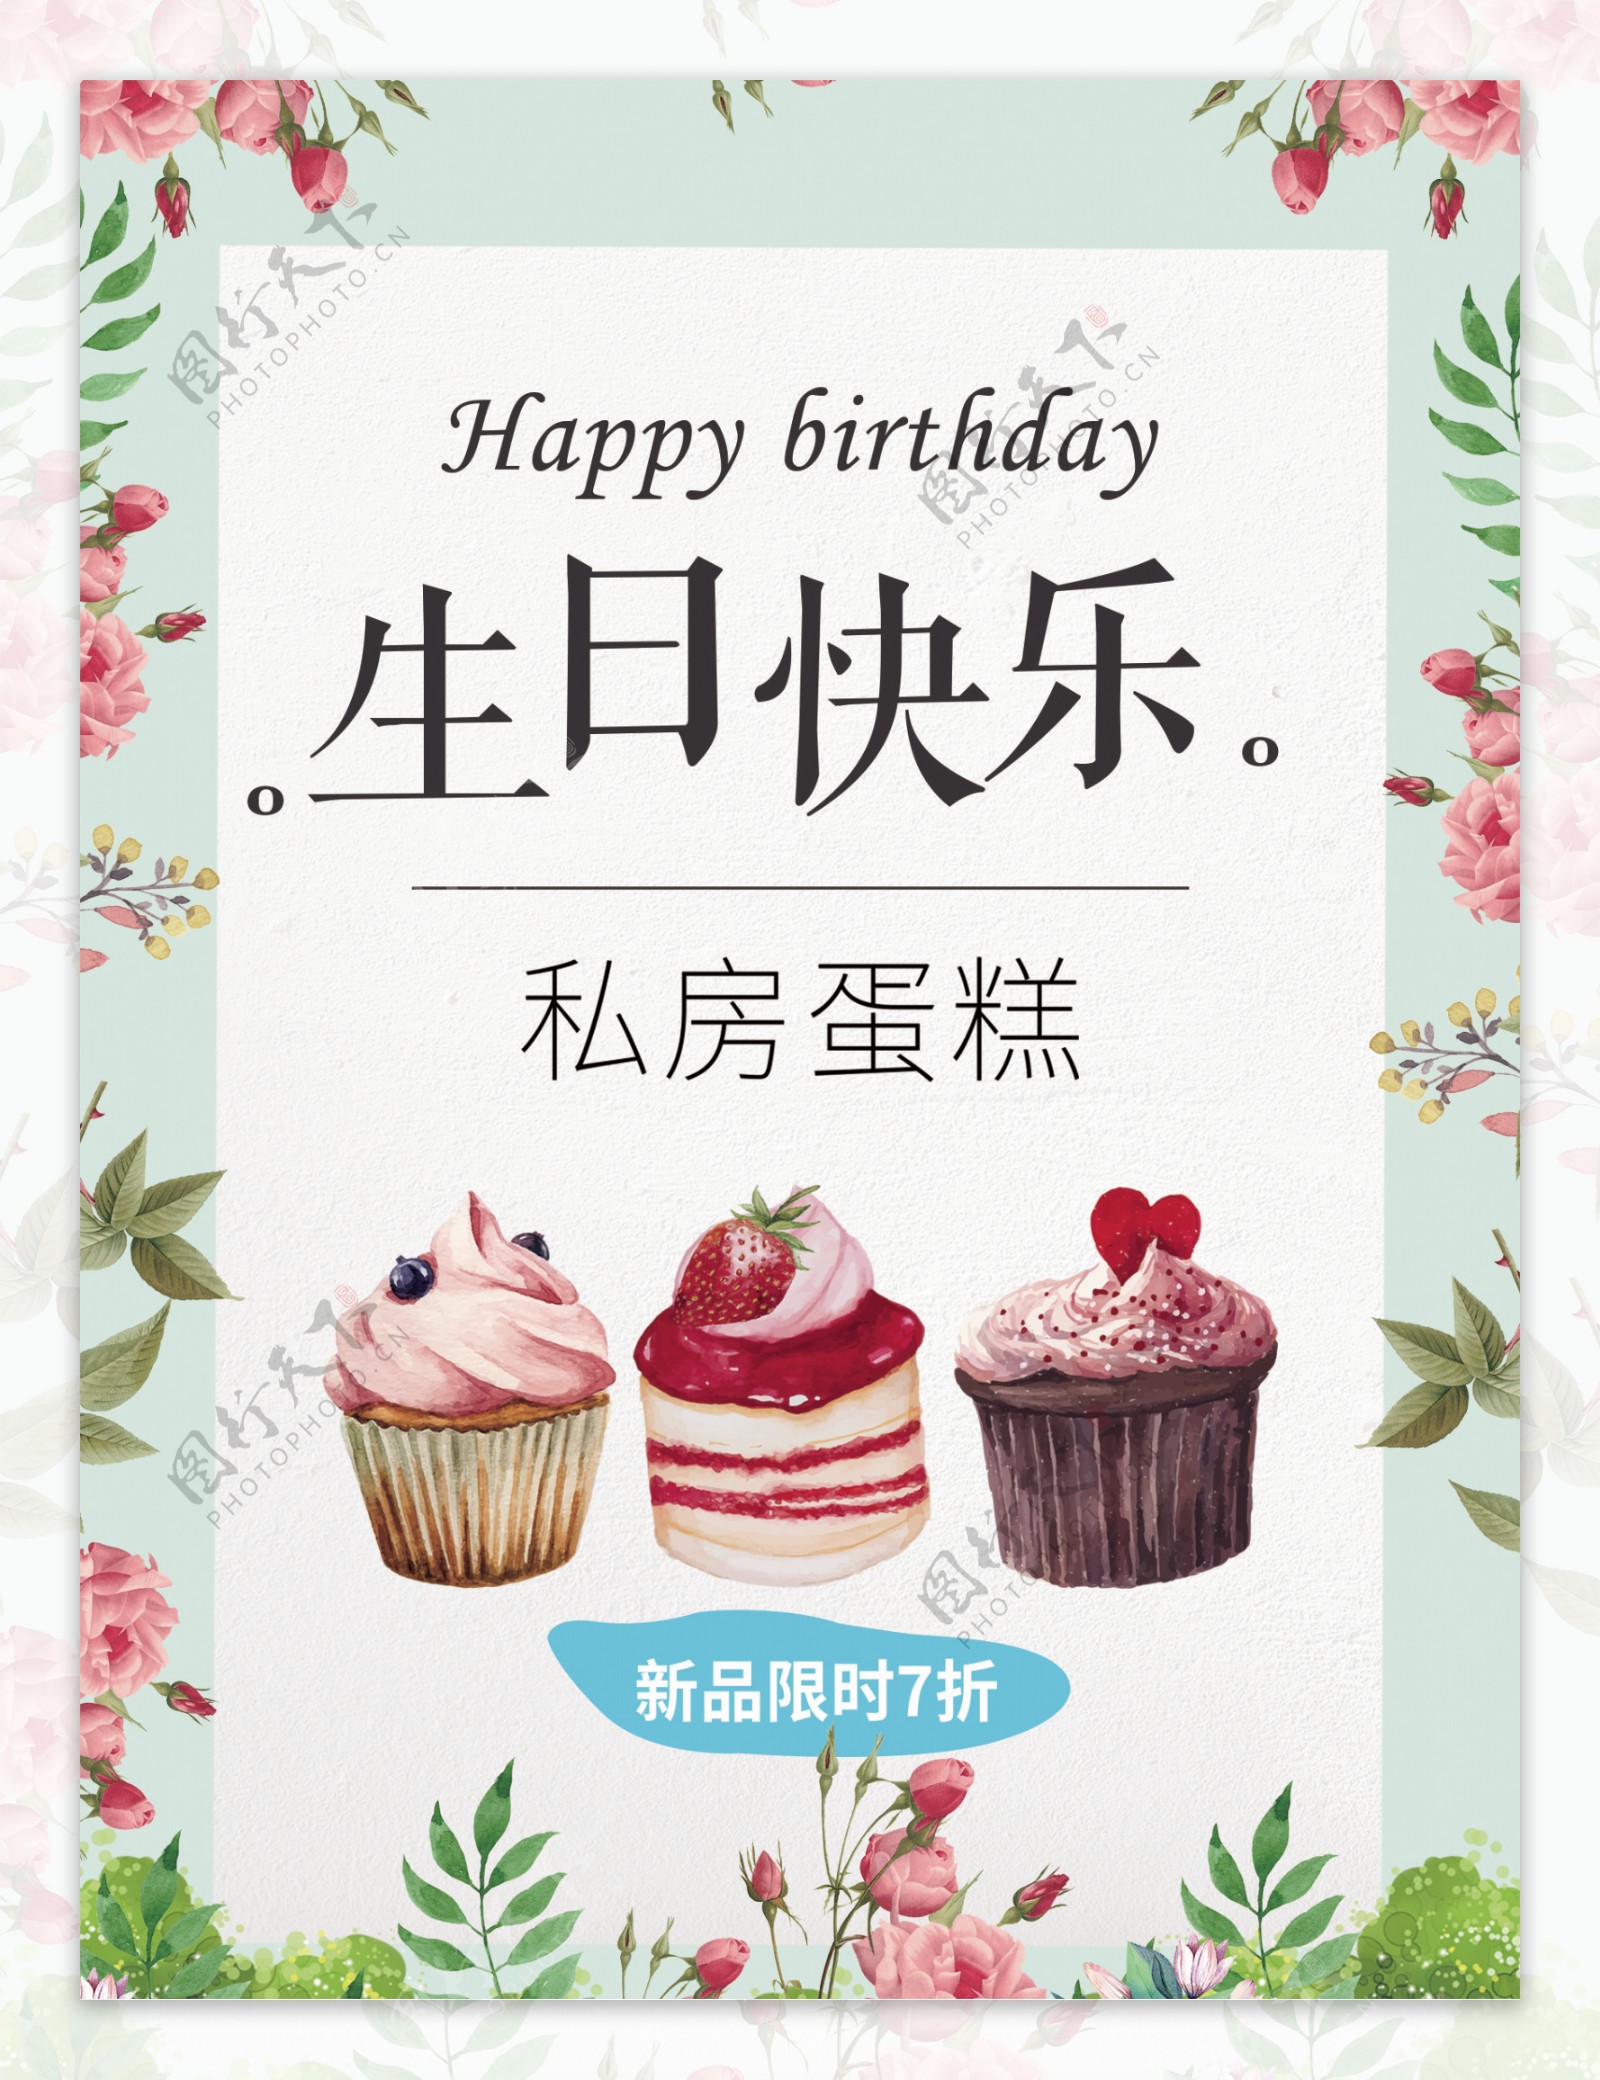 唯美简约小清新蛋糕生日快乐海报